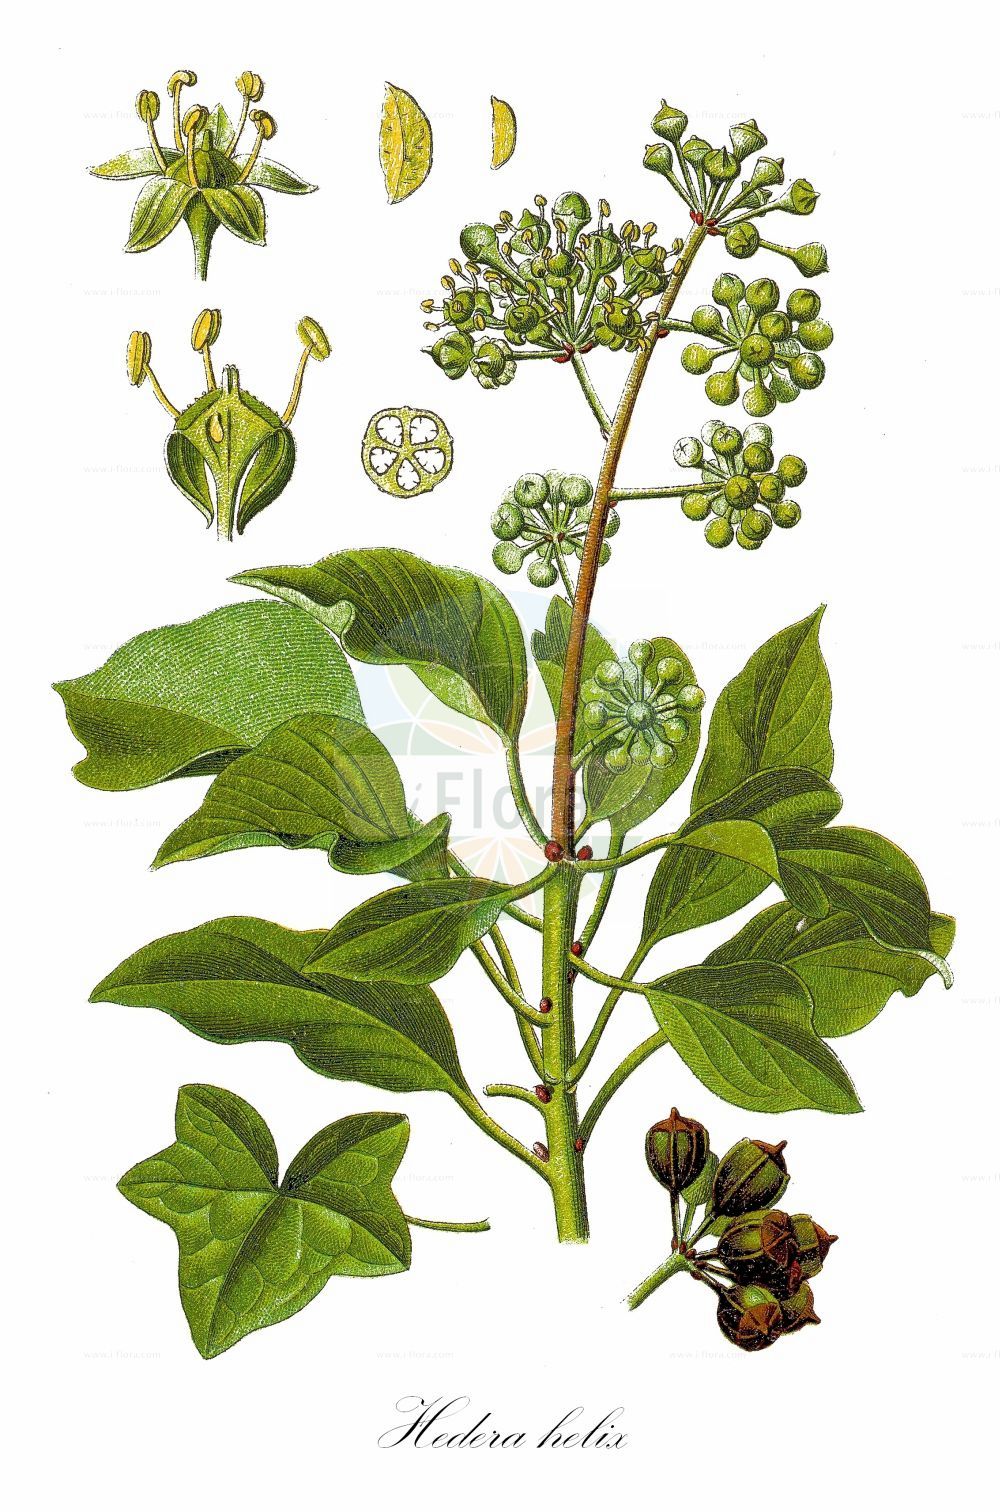 Historische Abbildung von Hedera helix (Gewöhnlicher Efeu - Ivy). ---- Historical Drawing of Hedera helix (Gewöhnlicher Efeu - Ivy).(Hedera helix,Gewöhnlicher Efeu,Ivy,Hedera helix,Hedera poetica,Gewoehnlicher Efeu,Efeu,Ivy,Common Ivy,English Ivy,Hedera,Efeu,Ivy,Araliaceae,Efeugewächse,Ginseng family,Sturm (1796f))